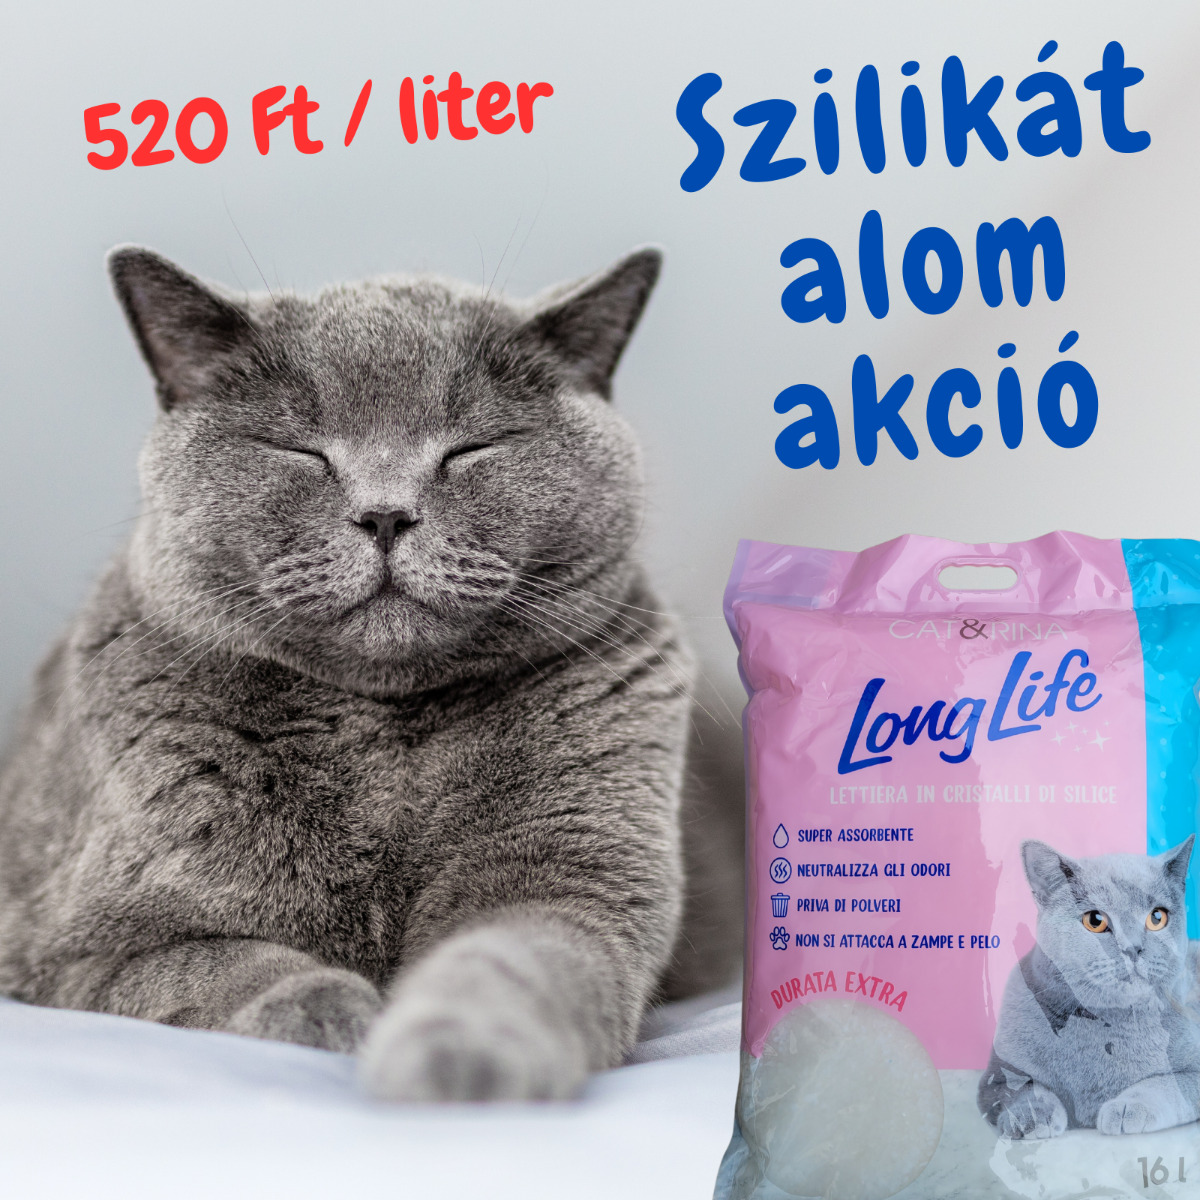 Cat & Rina LongLife așternut igienic din silicat pt pisici - zoom